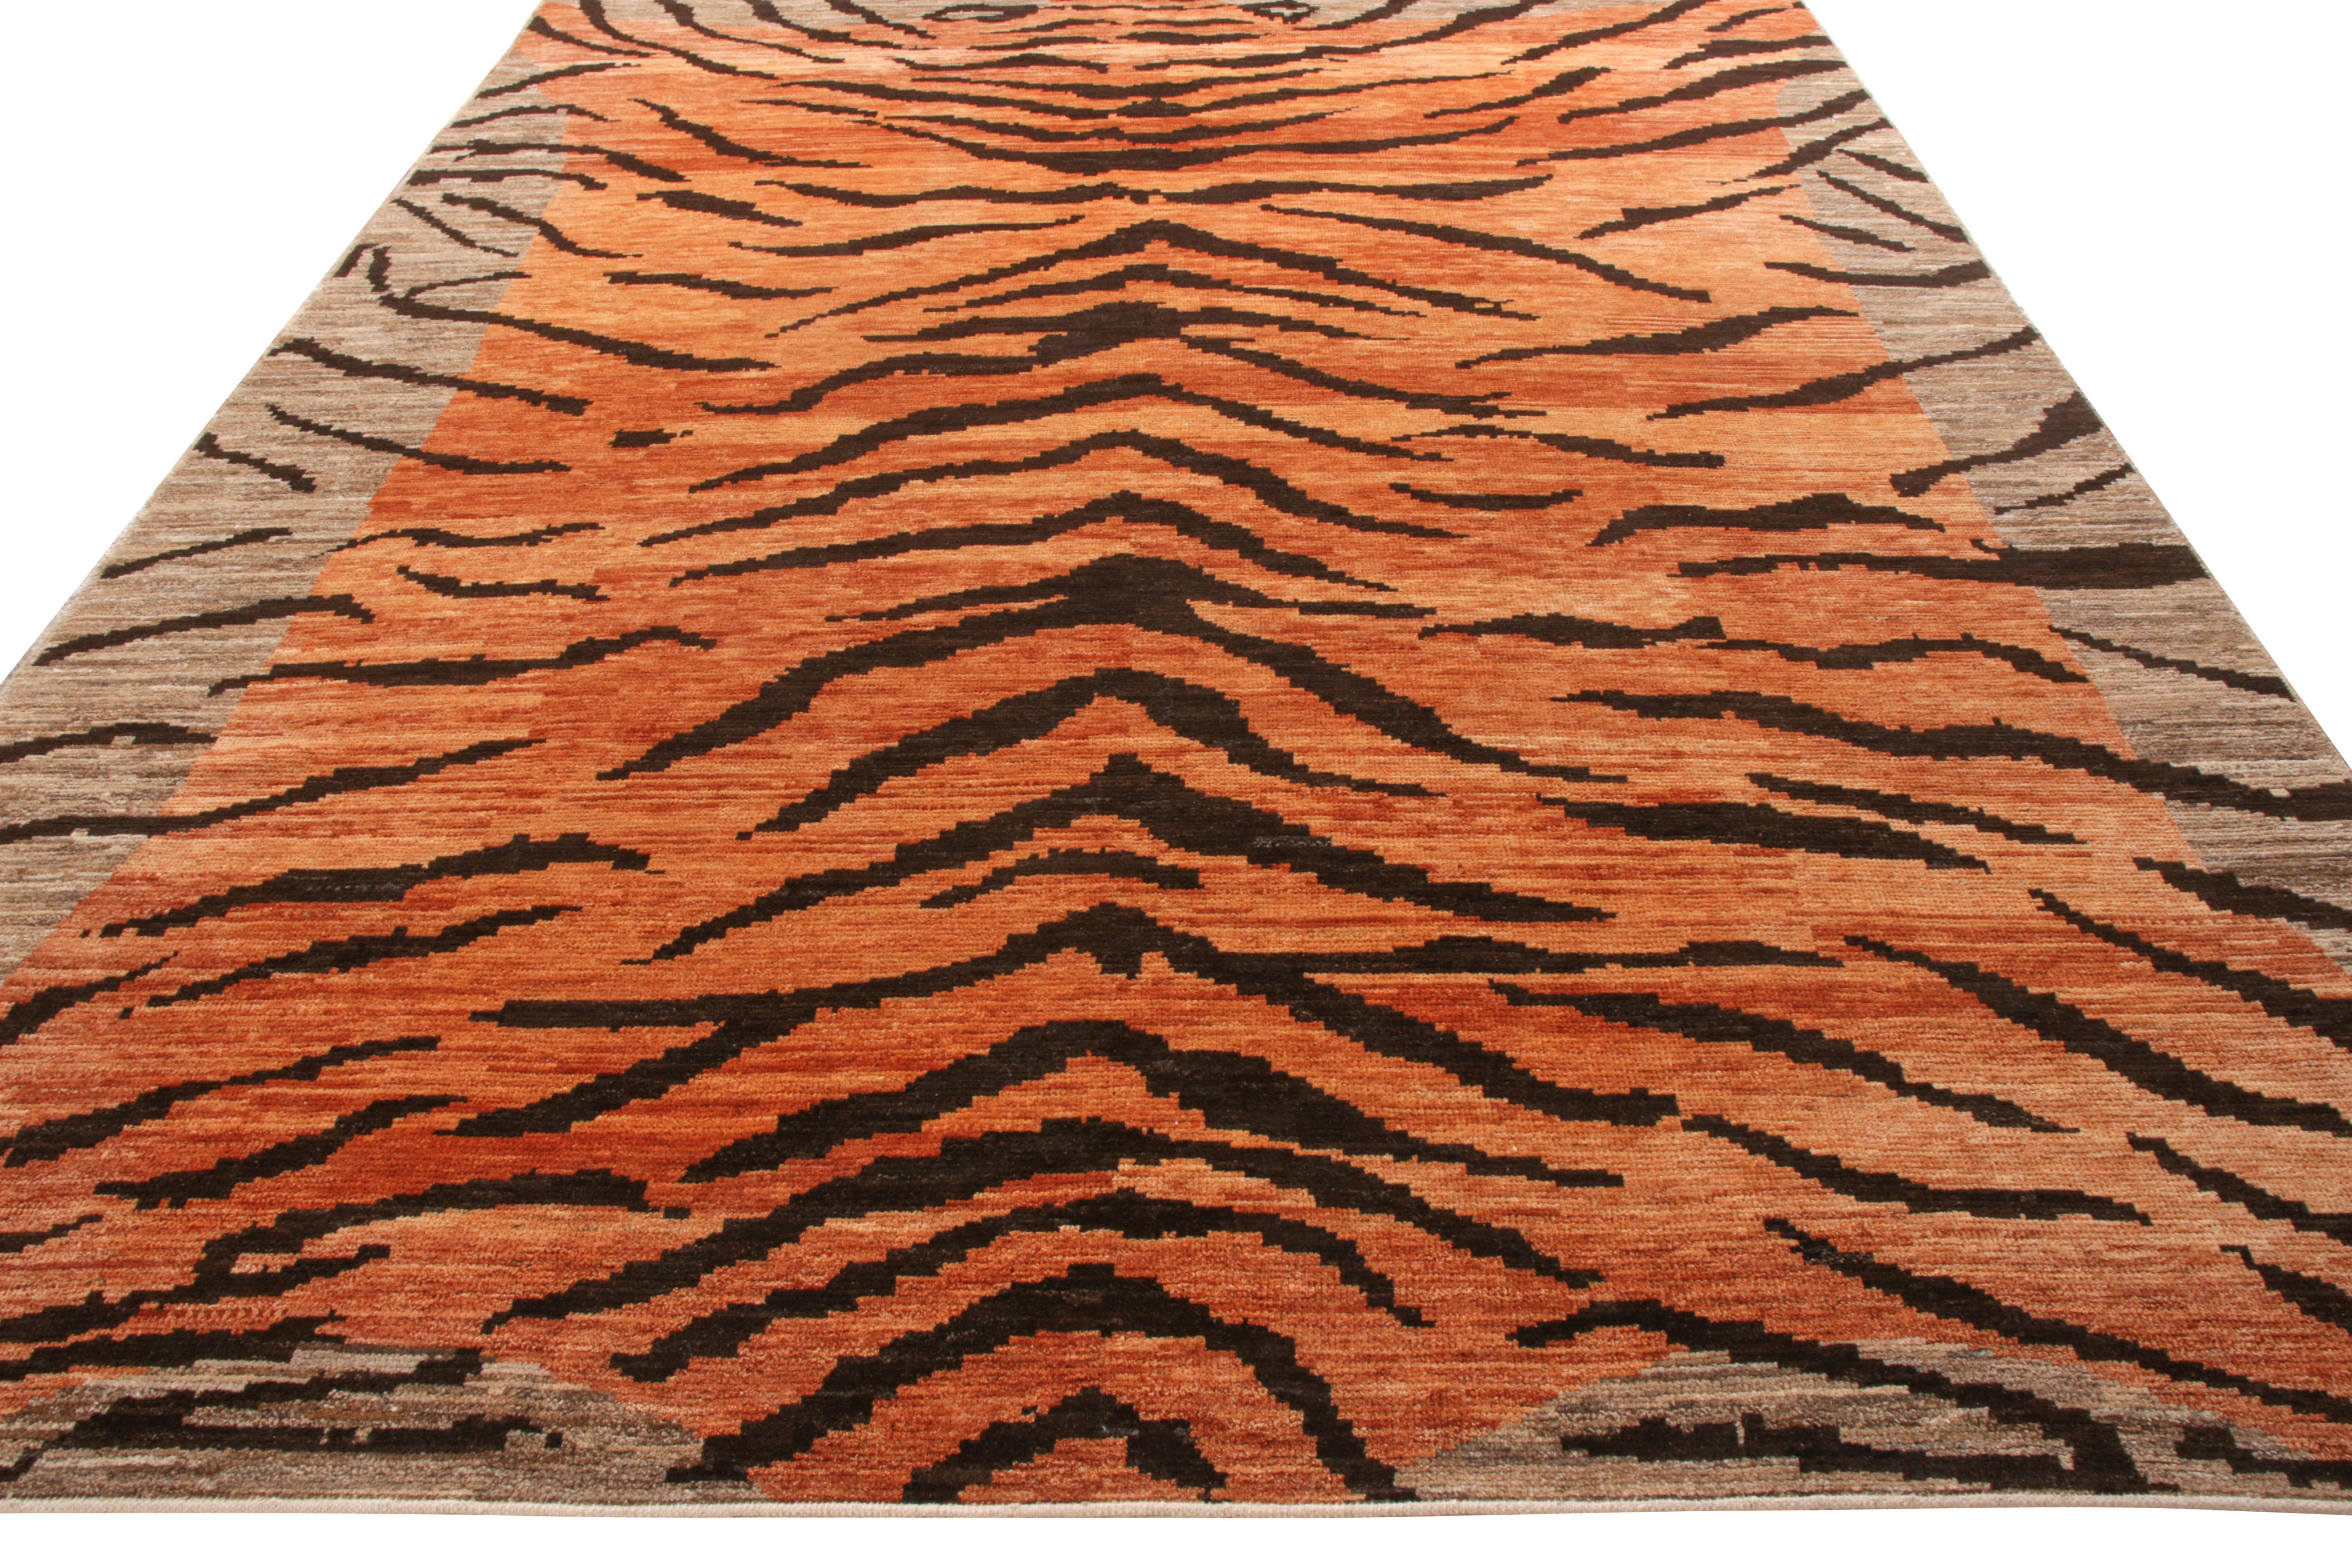 Rug & Kilim präsentiert diesen 9 x 12 großen Teppich aus der neu vorgestellten Tigers Collection. Dieser handgeknüpfte Wollteppich umgibt sich mit einer beeindruckenden Aura, die sich in der malerischen Darstellung üppiger orangefarbener und